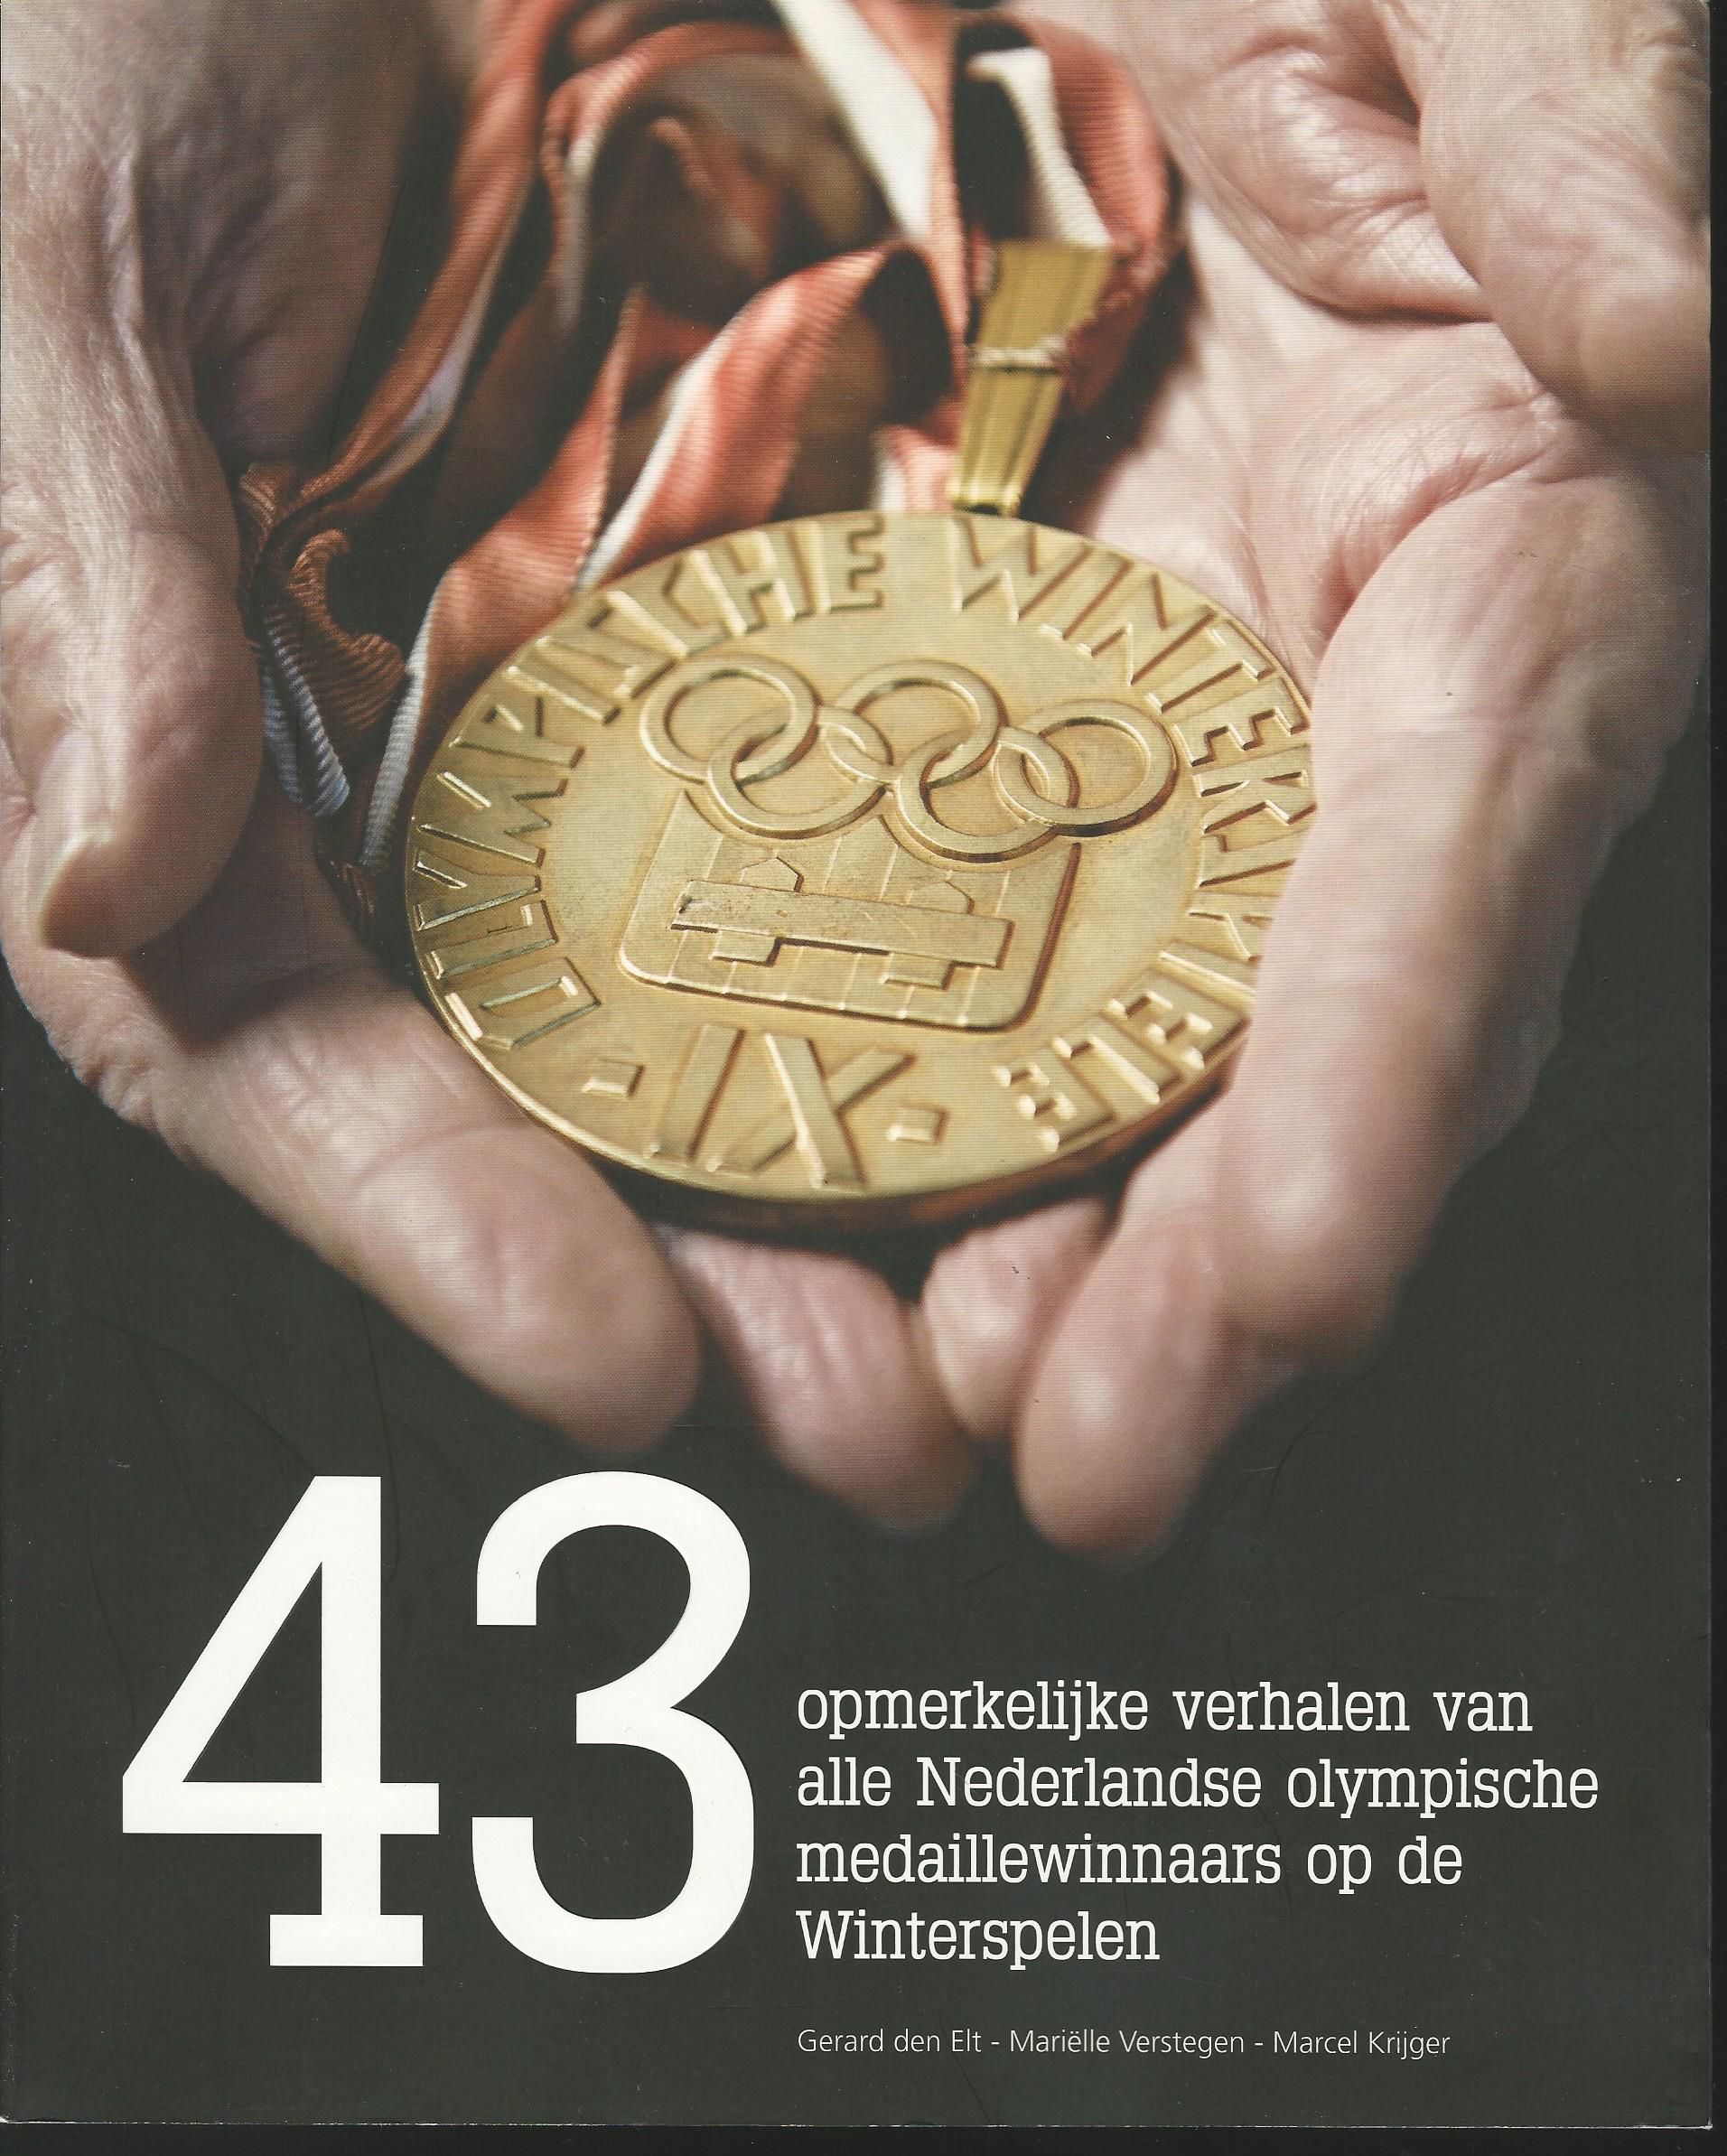 Elt, Gerard den - Verstegen, Mariëlle - Krijger, Marcel - 43 opmerkelijke verhalen van alle Nederlandse Olympische medaillewinnaars op de Winterspelen (kopie)